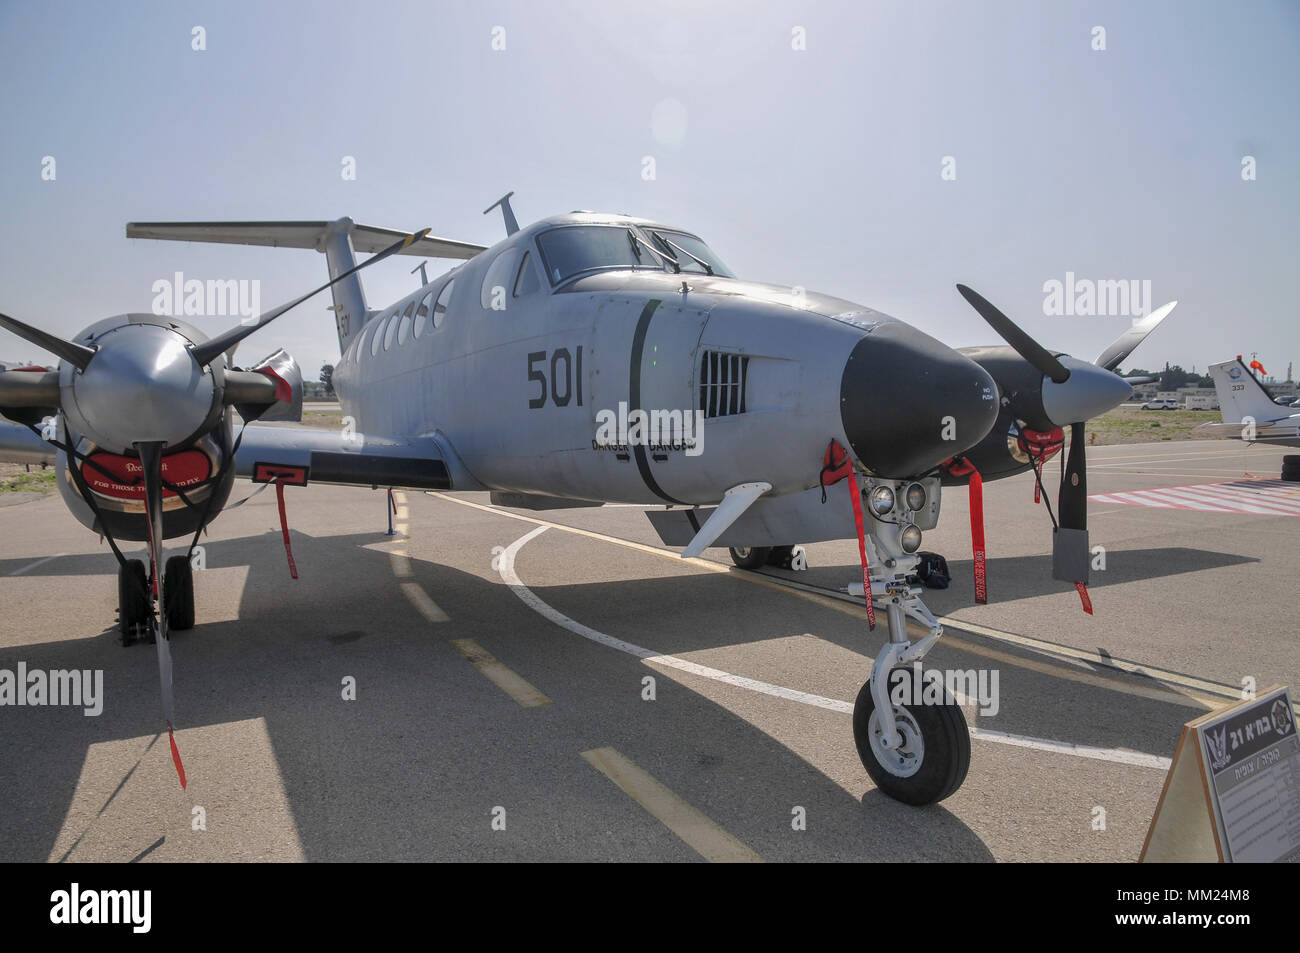 Una forza aerea israeliana (IAF) Beechcraft King Air twin-aeromobile a turboelica Foto Stock